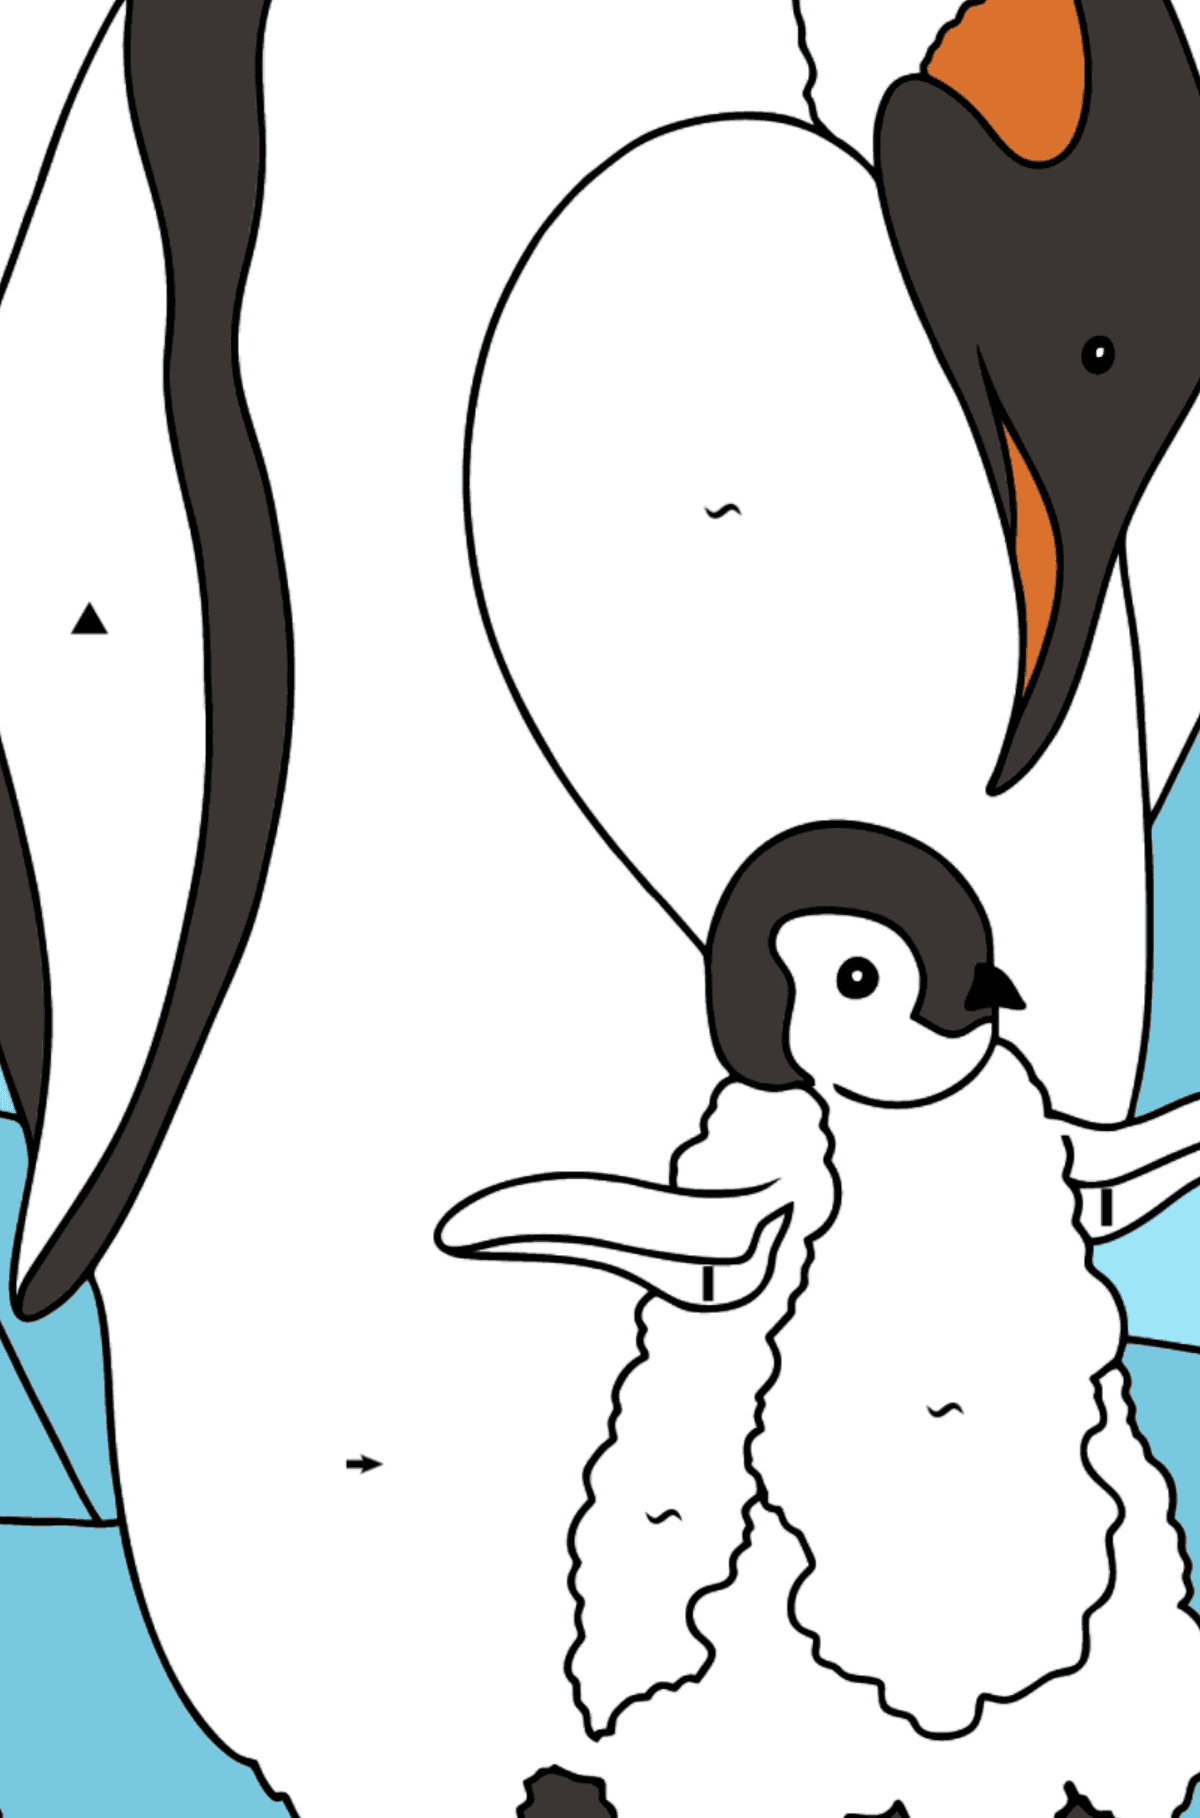 Dibujo para Colorear - Un Pingüino con su Bebé - Colorear por Símbolos para Niños